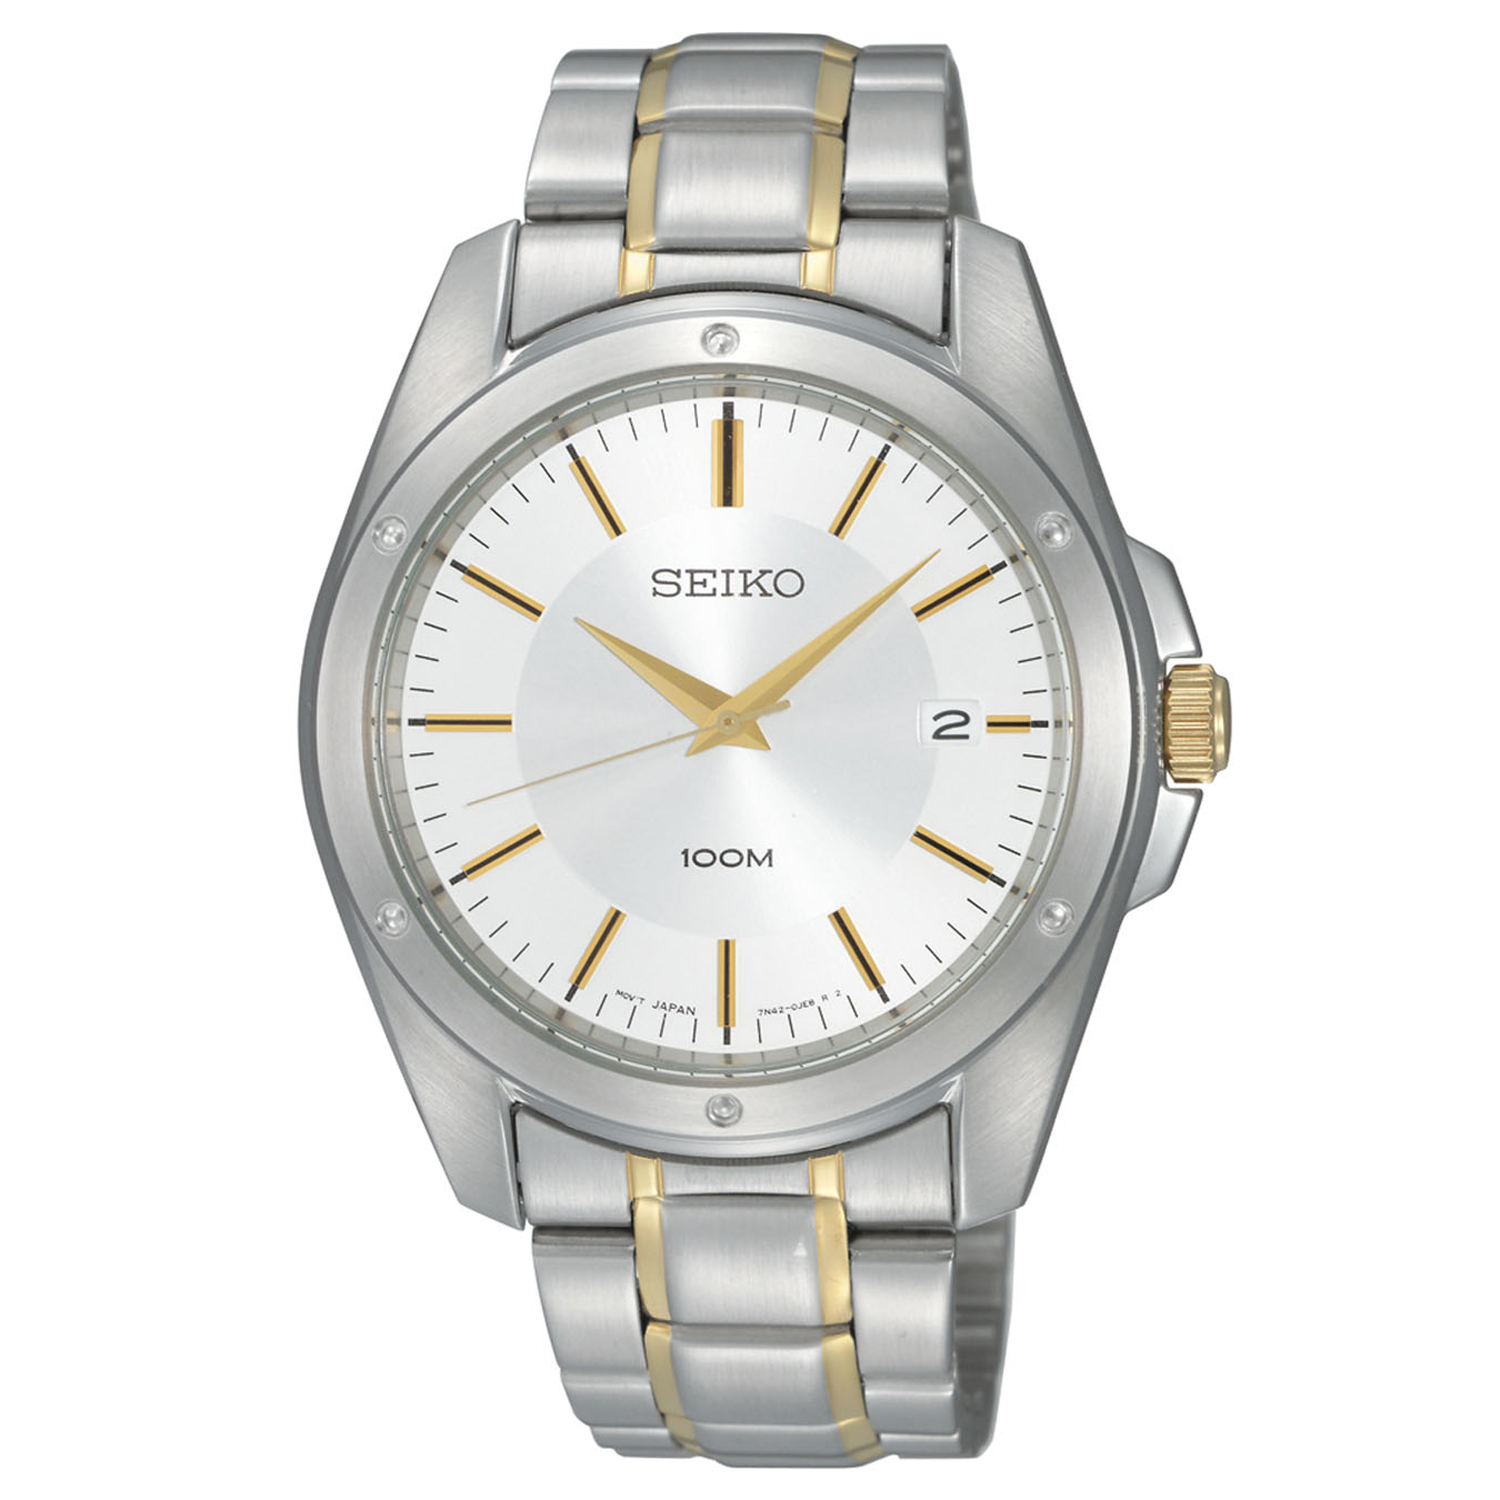 Seiko SGEF83 Seiko Men's Two-Tone Bracelet White Dial Watch